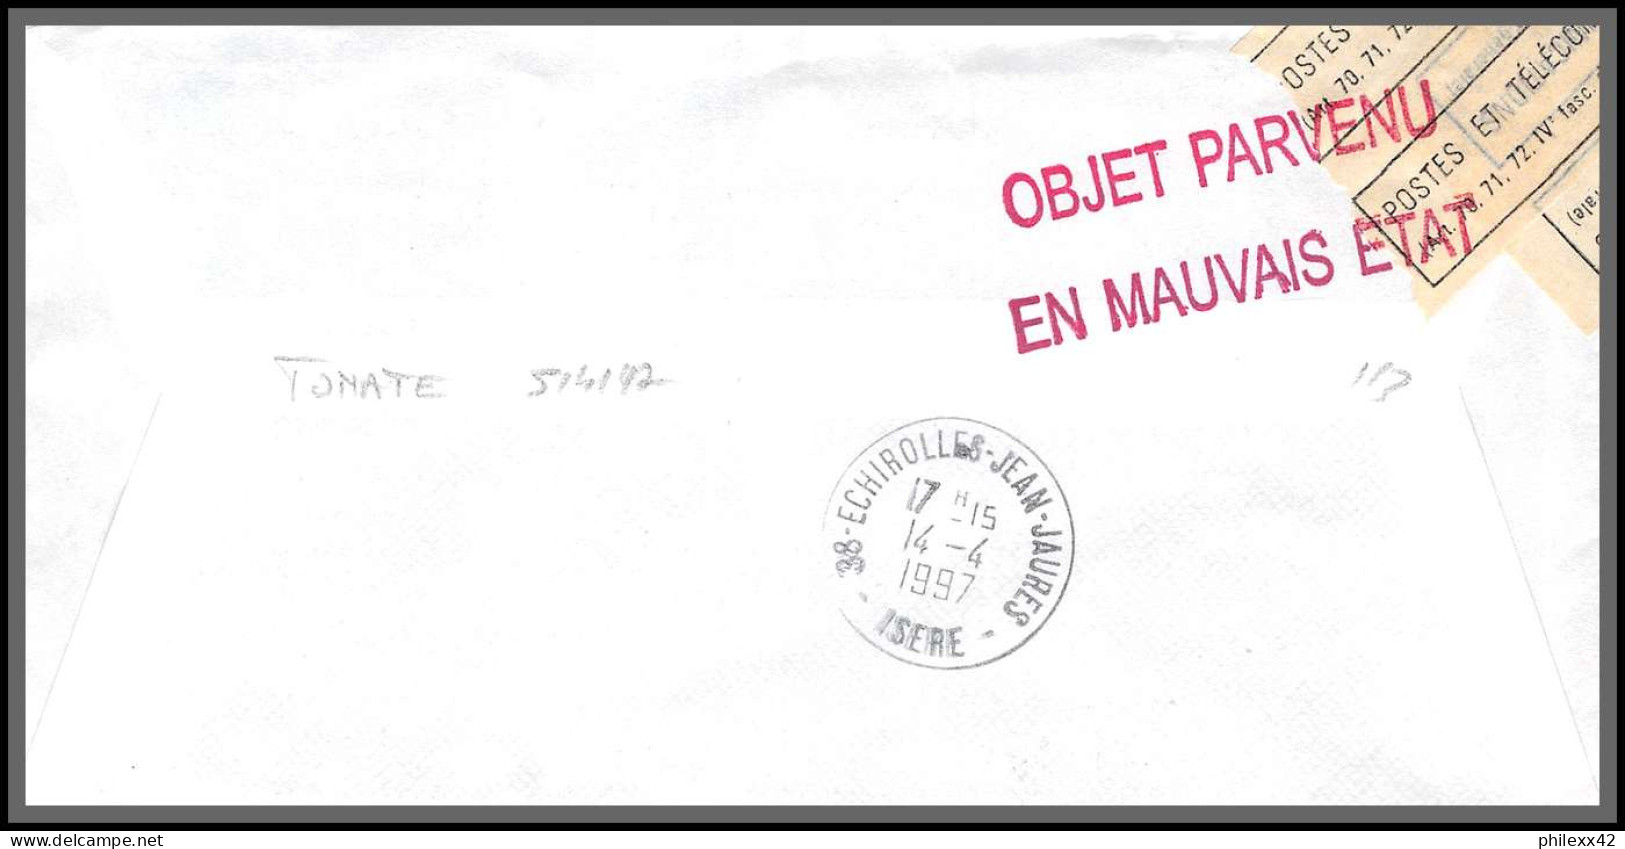 74088 Objet Parvenu En Mauvais état 14/4/1997 Tonate Guyane Echirolles Isère Lettre Cover Colonies  - Cartas & Documentos